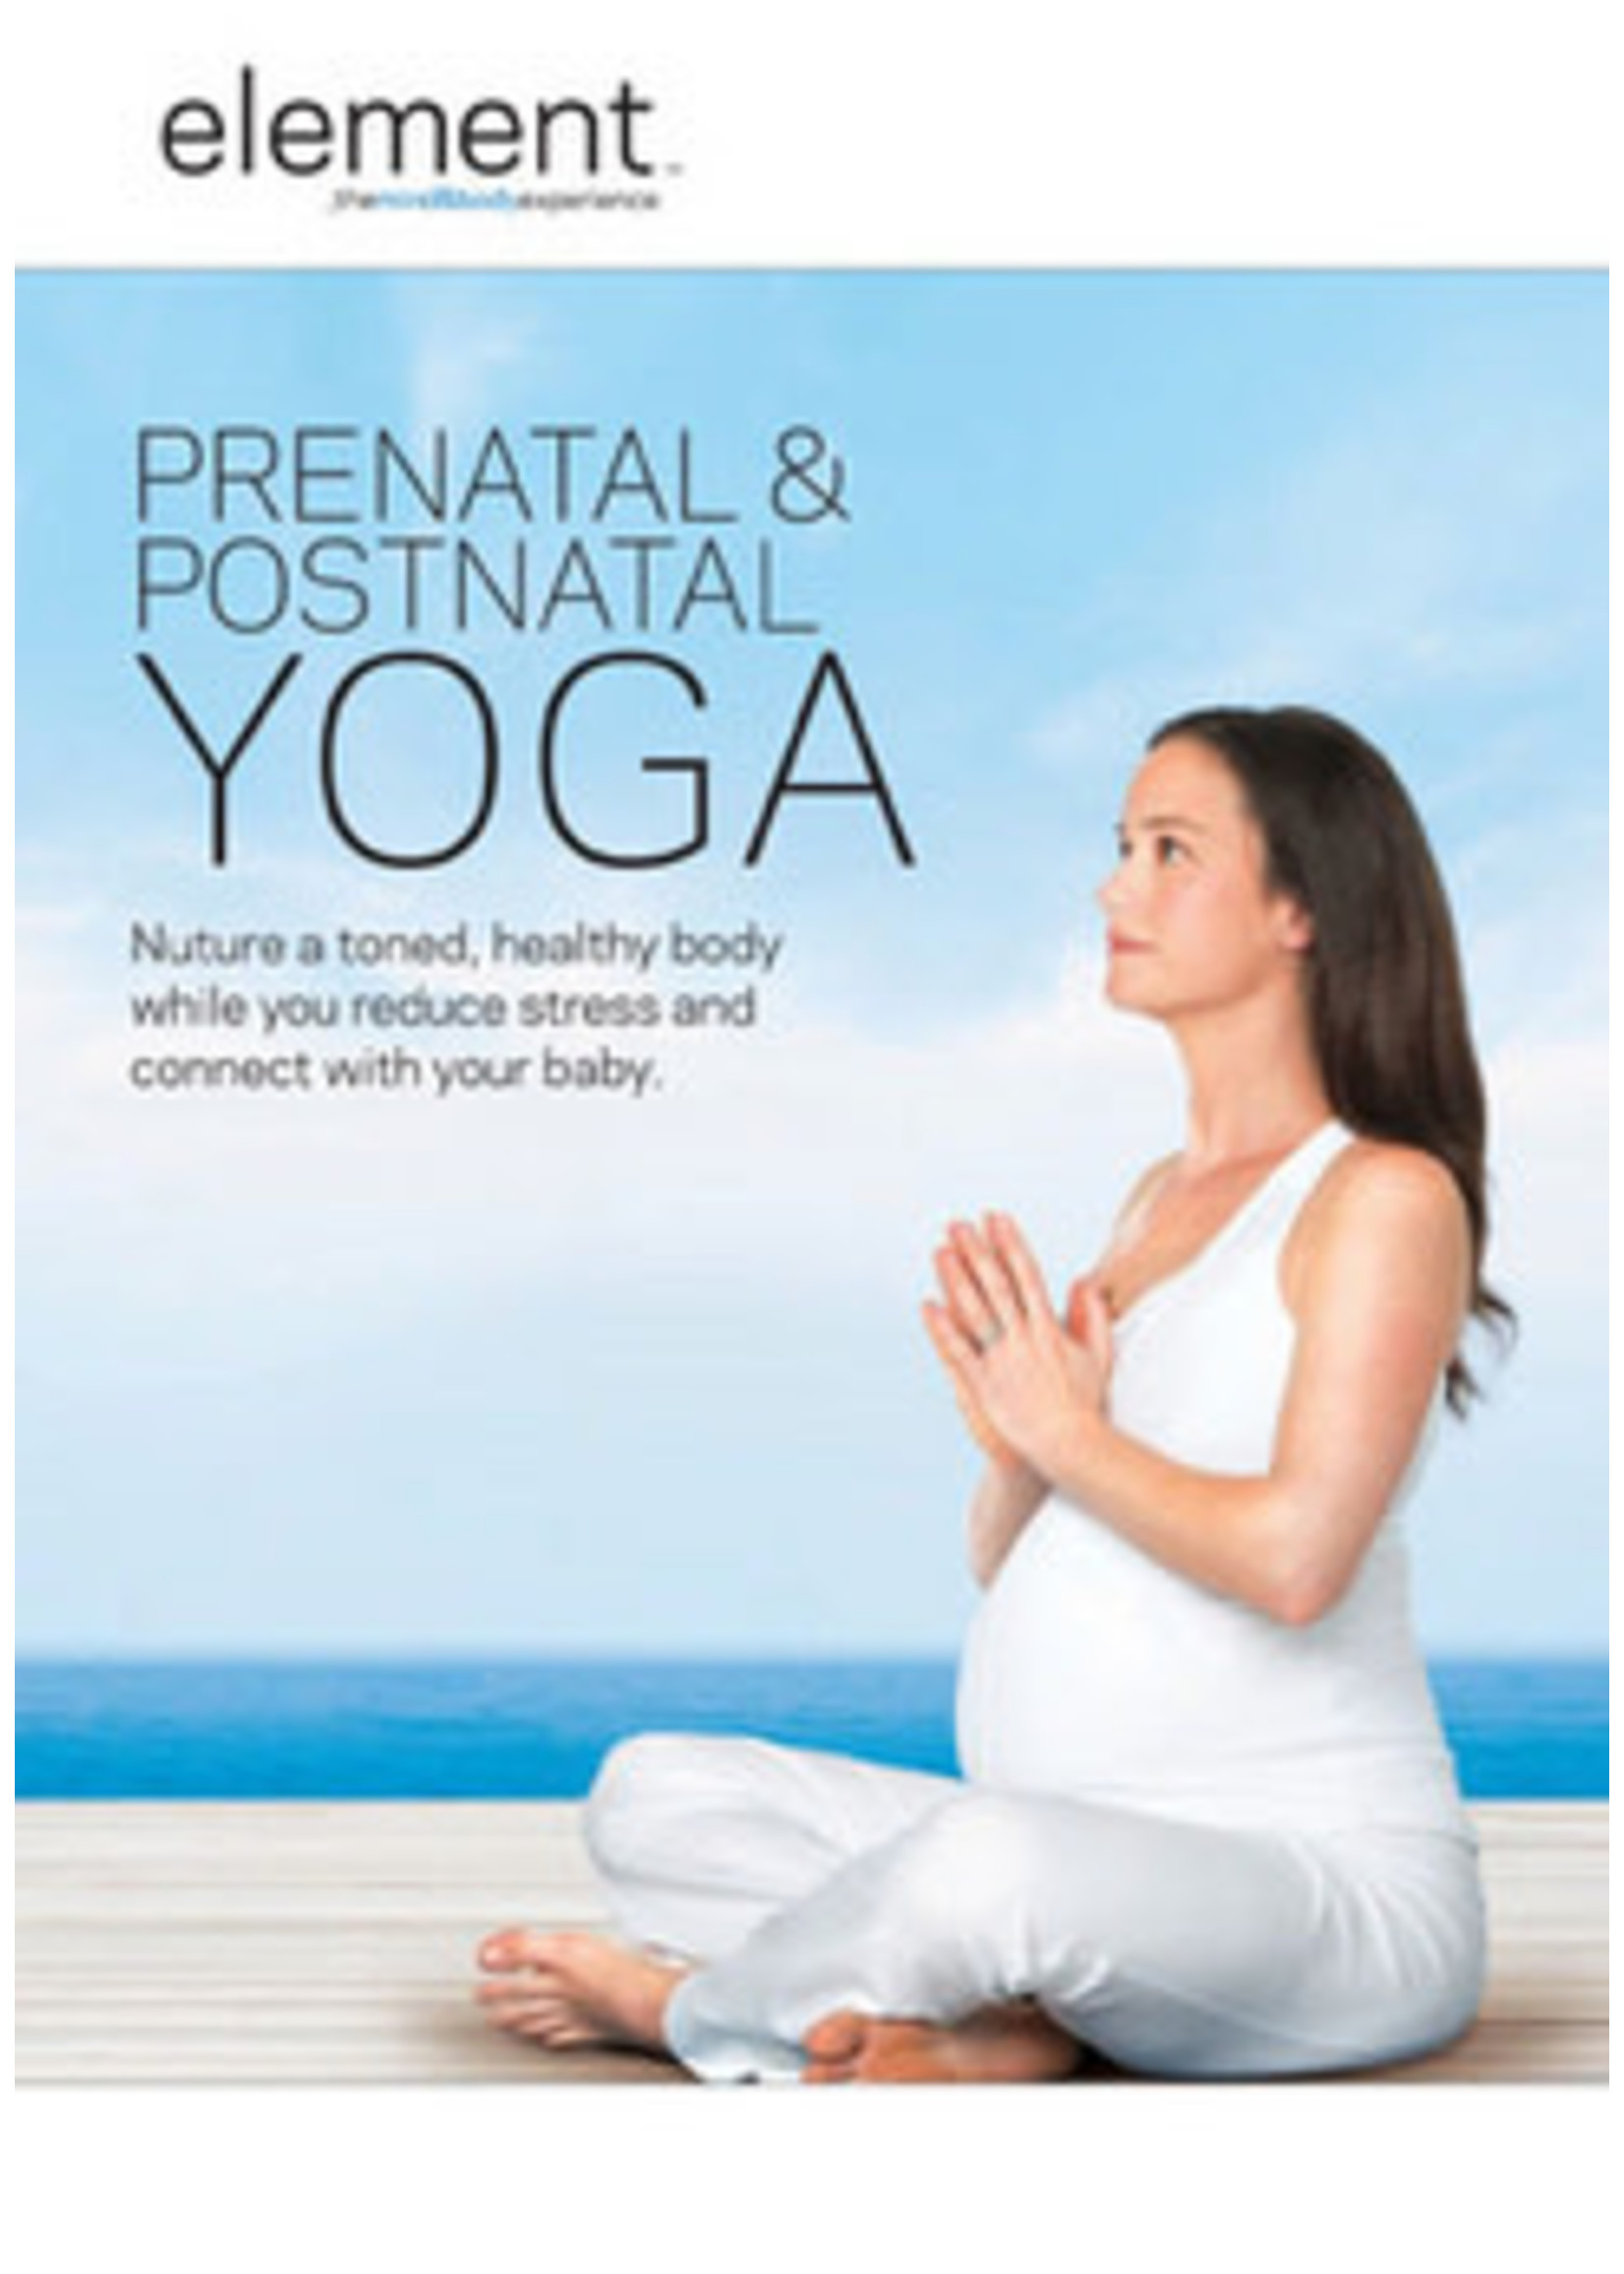 Element: Prenatal & Postnatal Yoga (DVD)